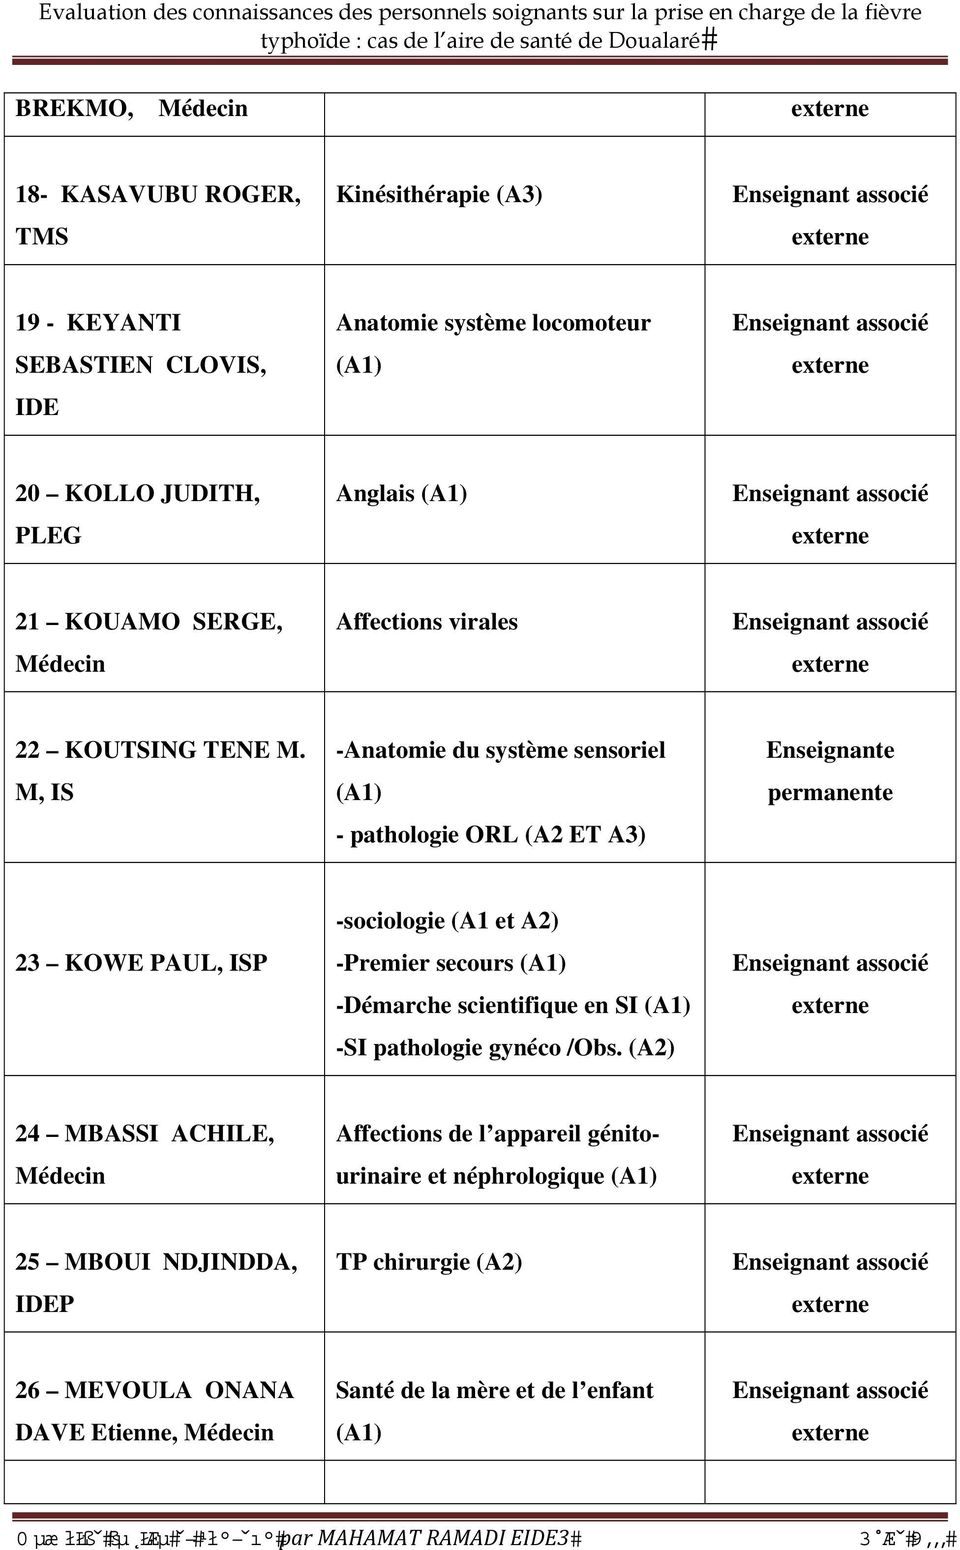 M, IS -Anatomie du système sensoriel (A1) - pathologie ORL (A2 ET A3) Enseignante permanente 23 KOWE PAUL, ISP -sociologie (A1 et A2) -Premier secours (A1)